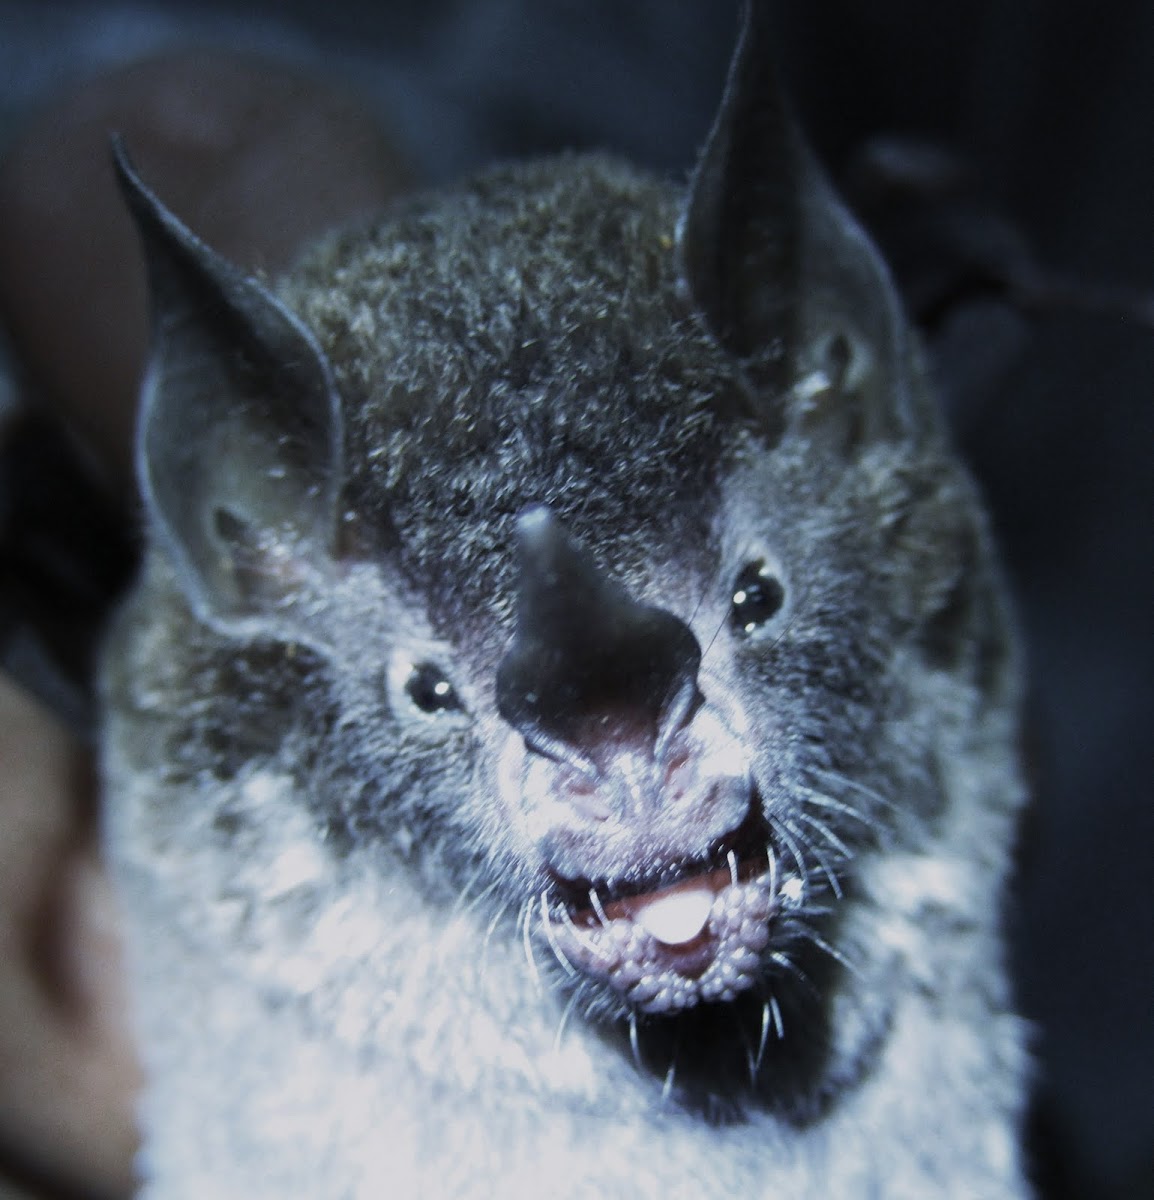 Leaf-nosed Bat